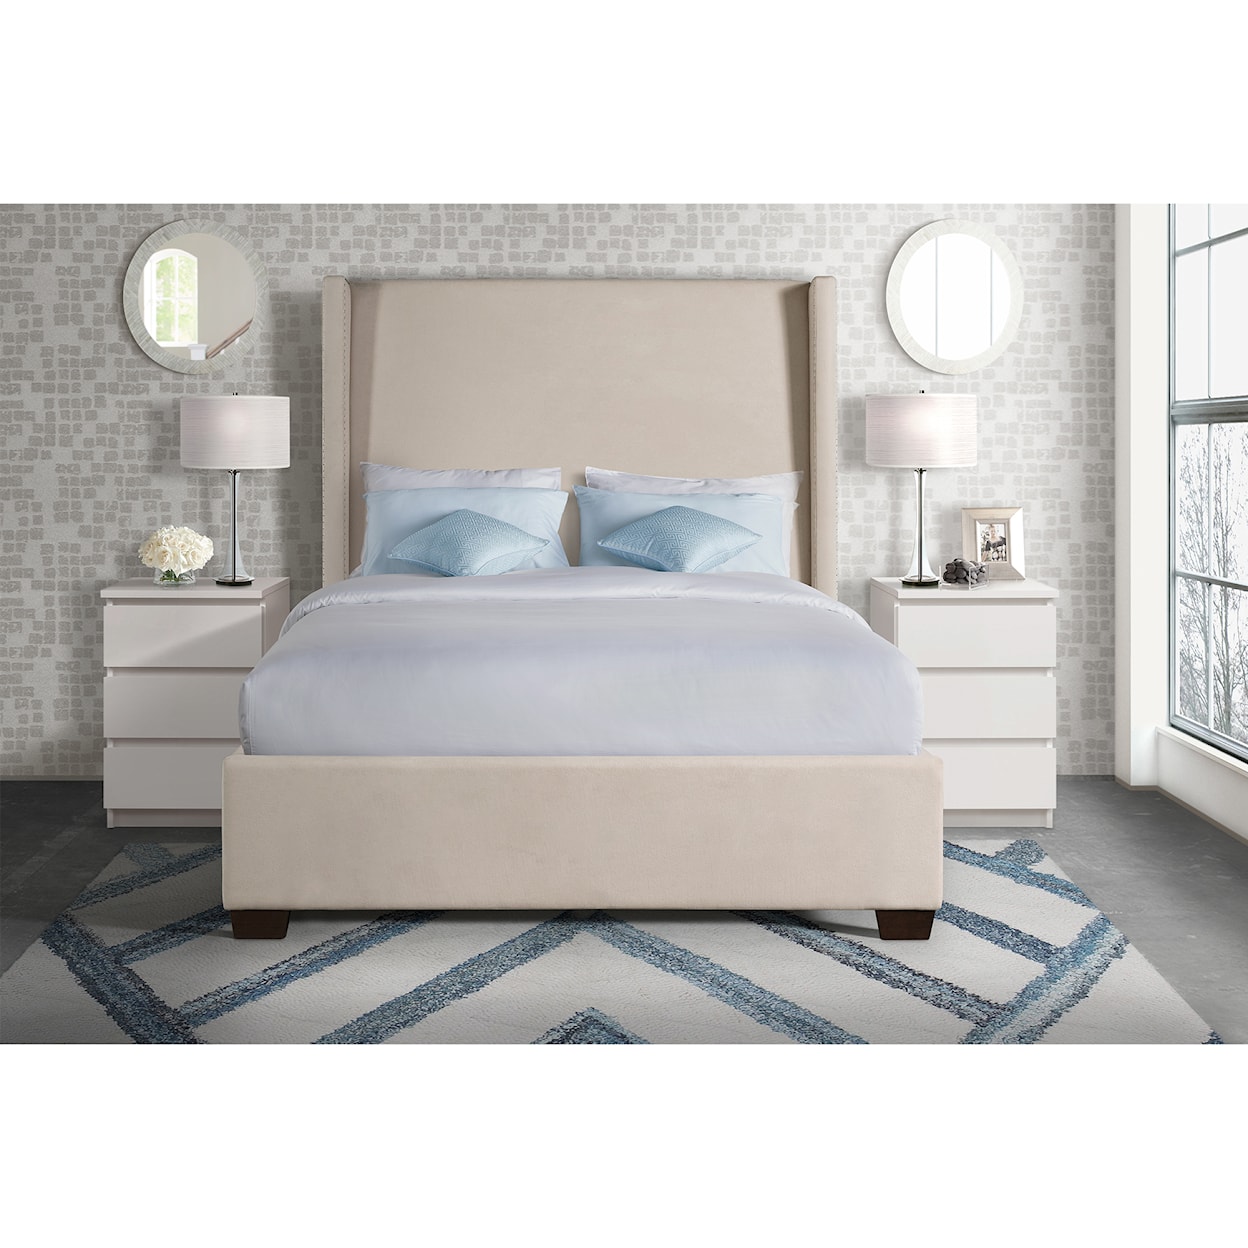 Elements International Magnolia King Upholstered Bed